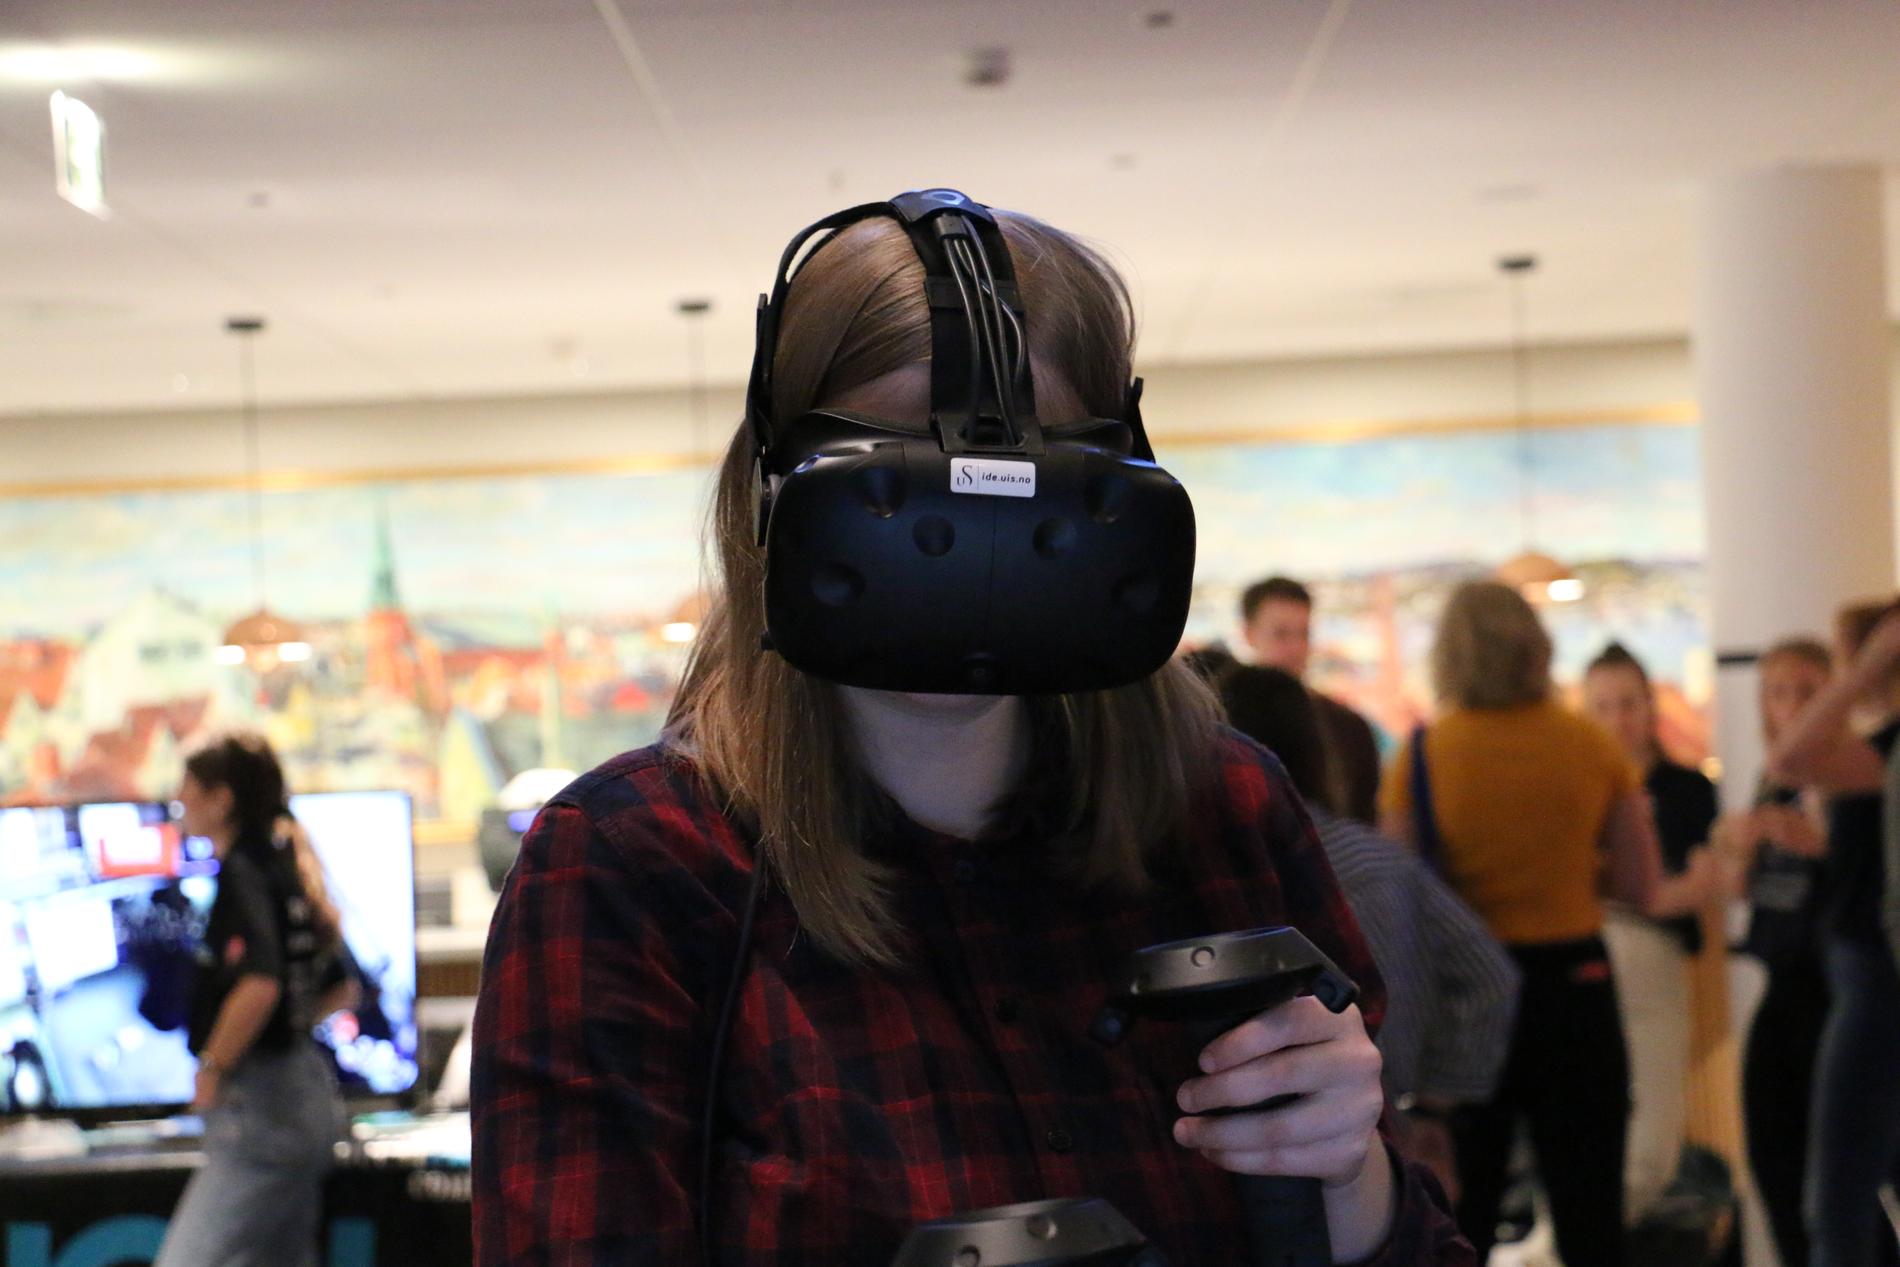 Kristine Mellemstrand er interessert i teknologi, og ønsket å se hva som finnes, hun endte derfor opp på arrangementet, og fikk prøve VR-briller.